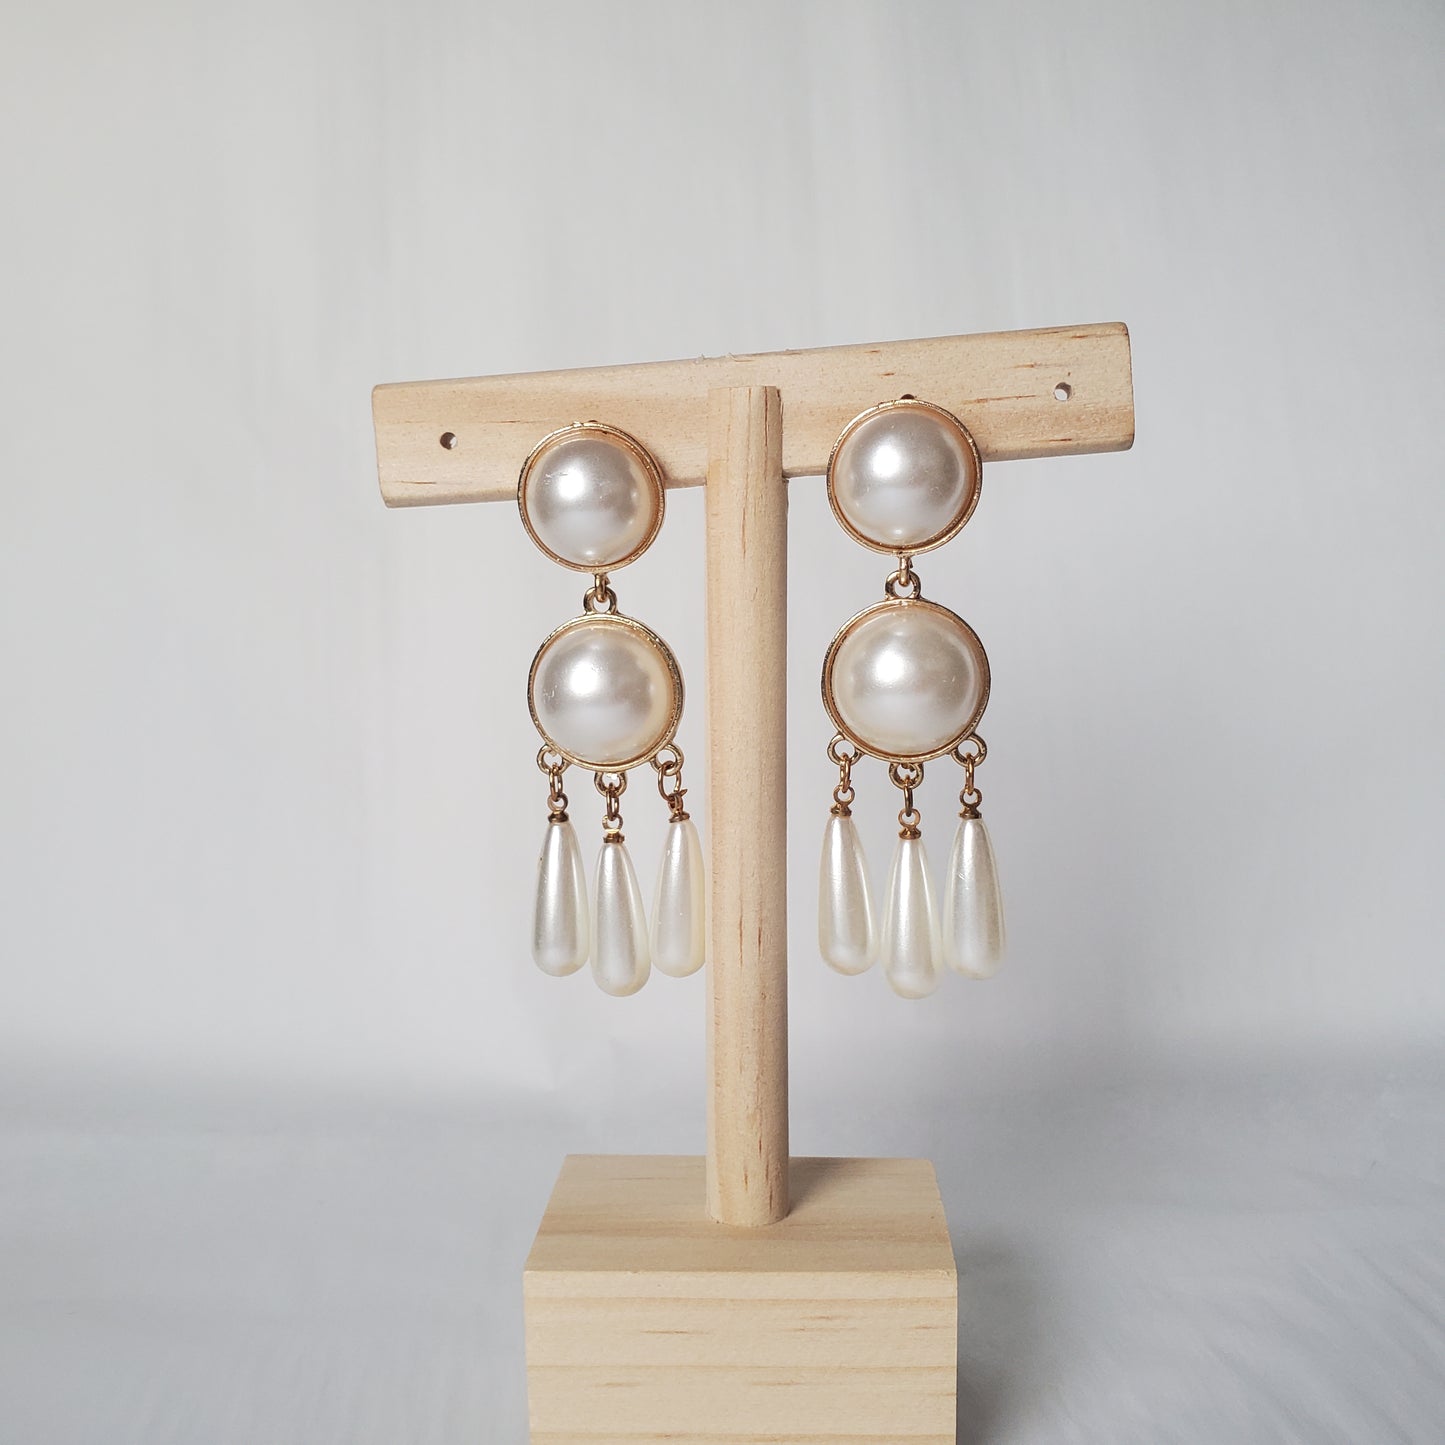 Minimlist earrings